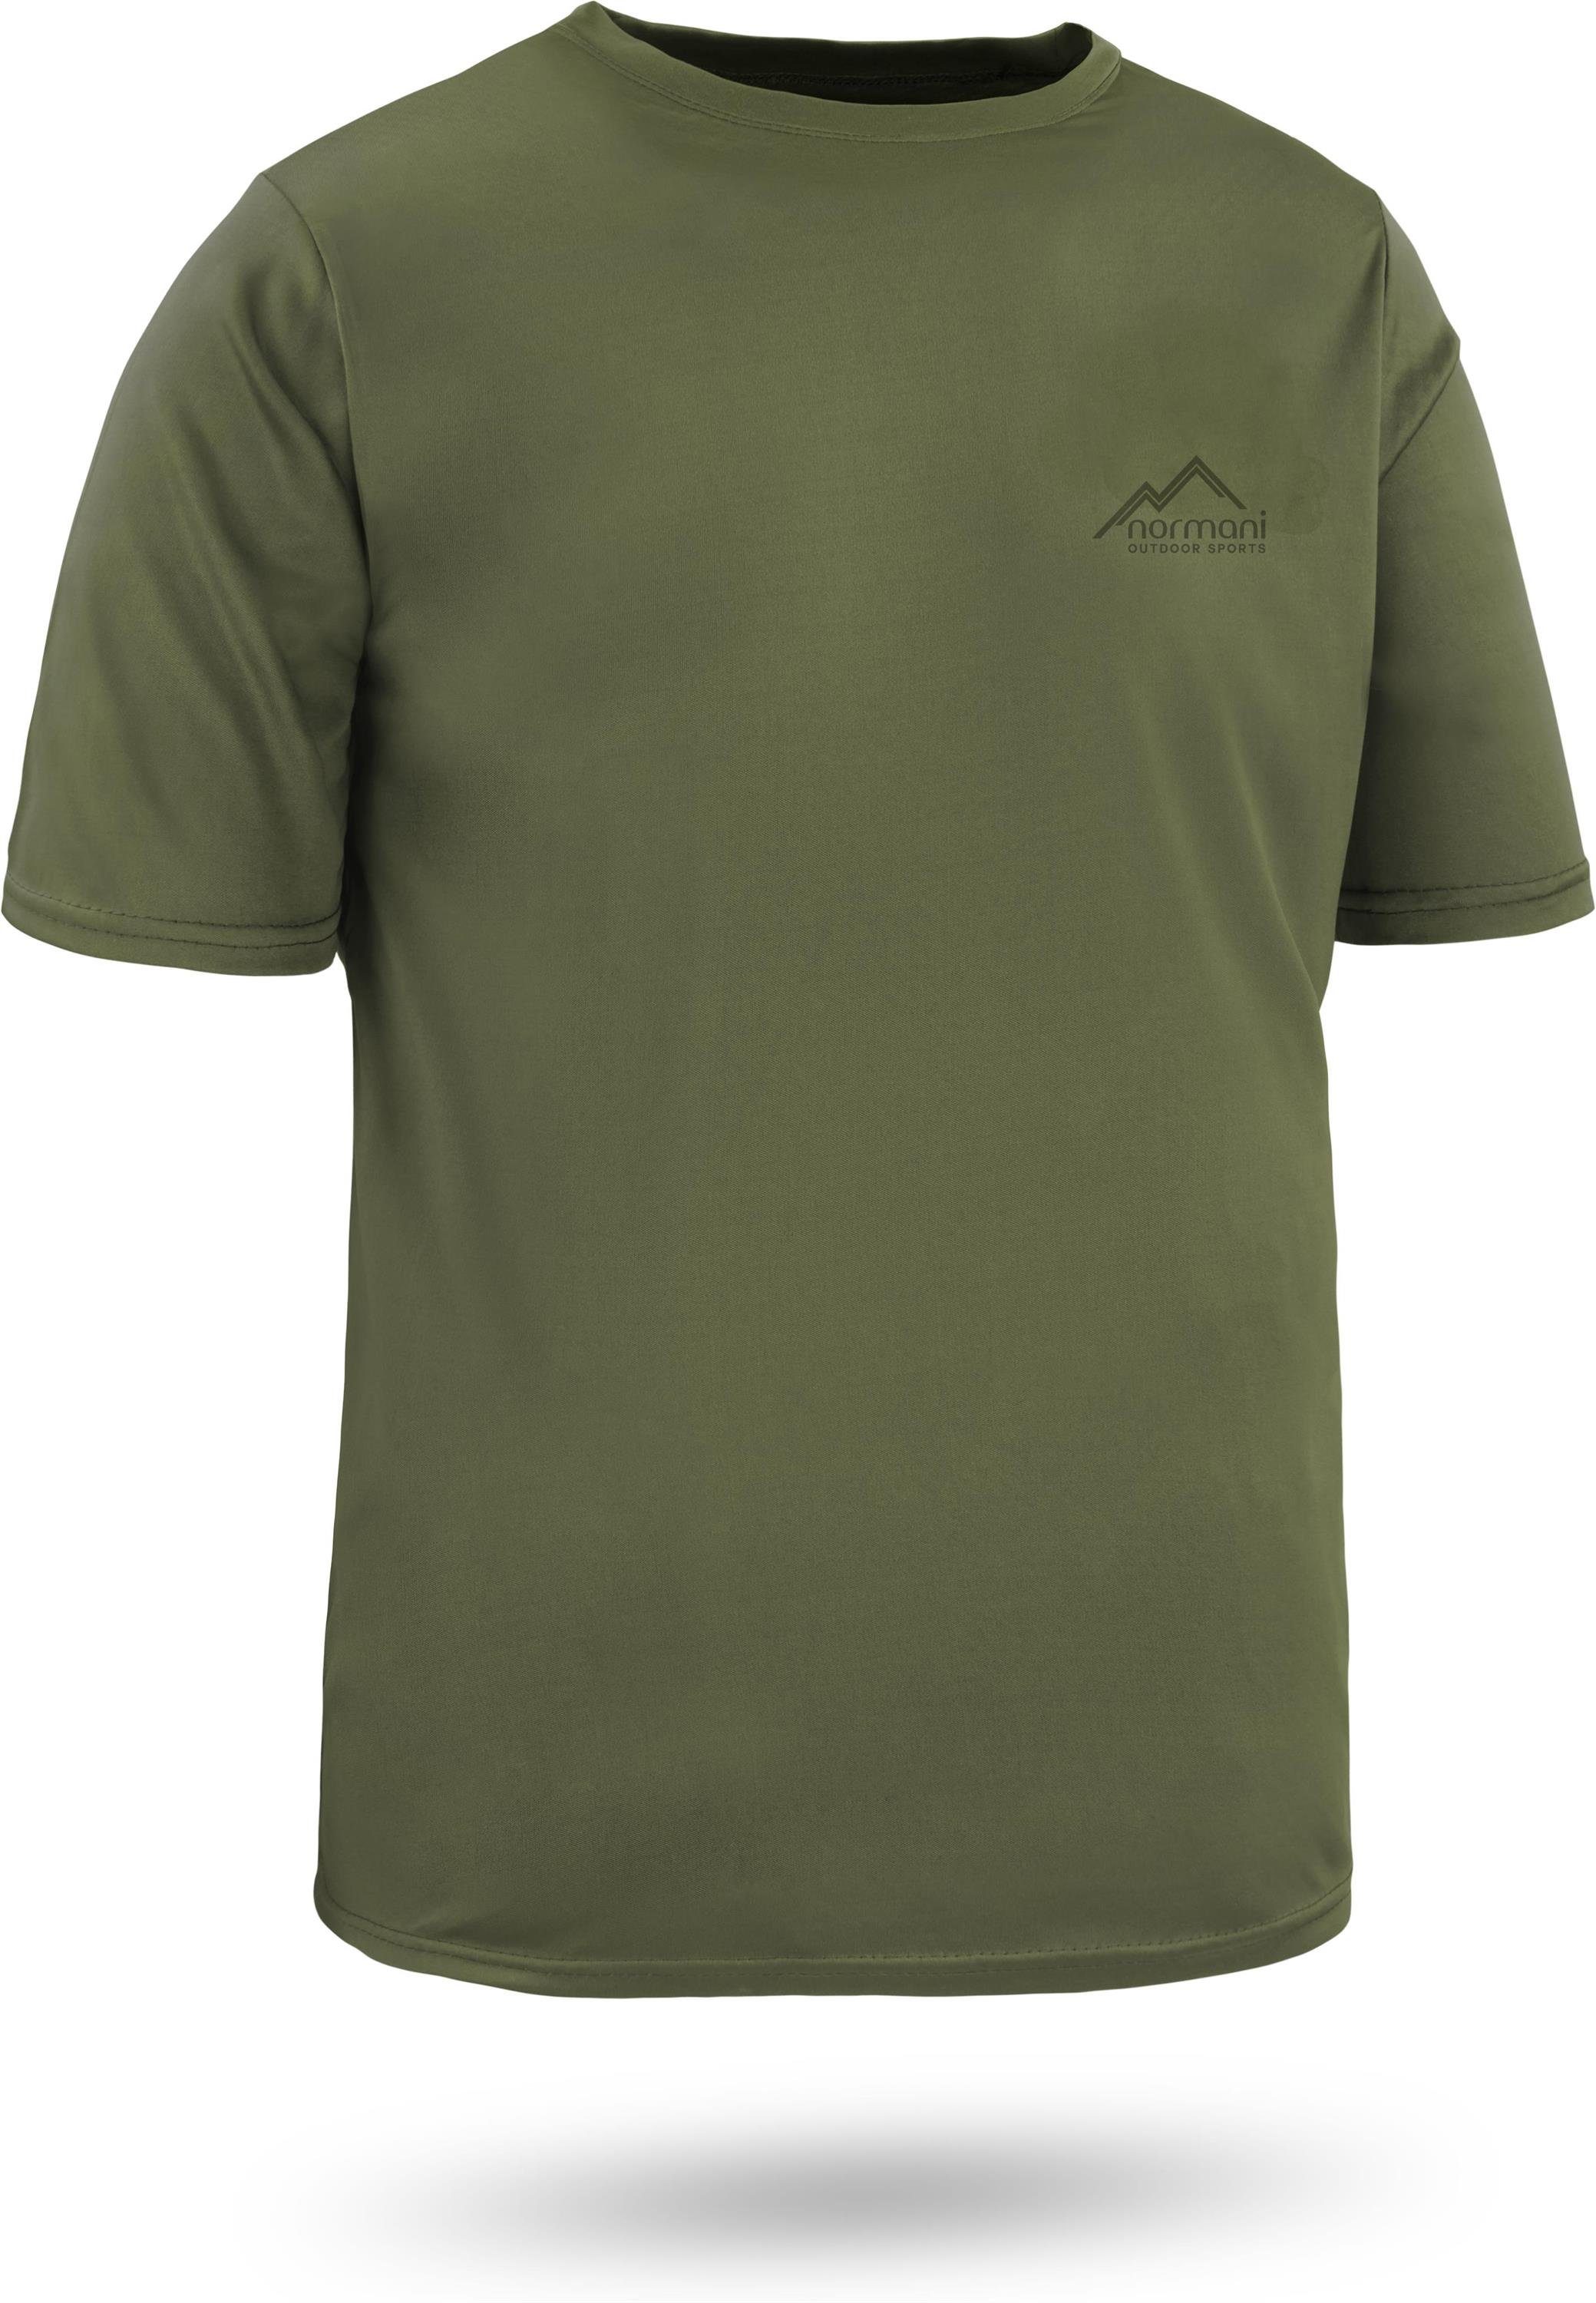 normani Funktionsshirt Shirt Cooling-Material Fitness Funktions-Sport Grün Sportswear Kurzarm T-Shirt mt Agra Herren